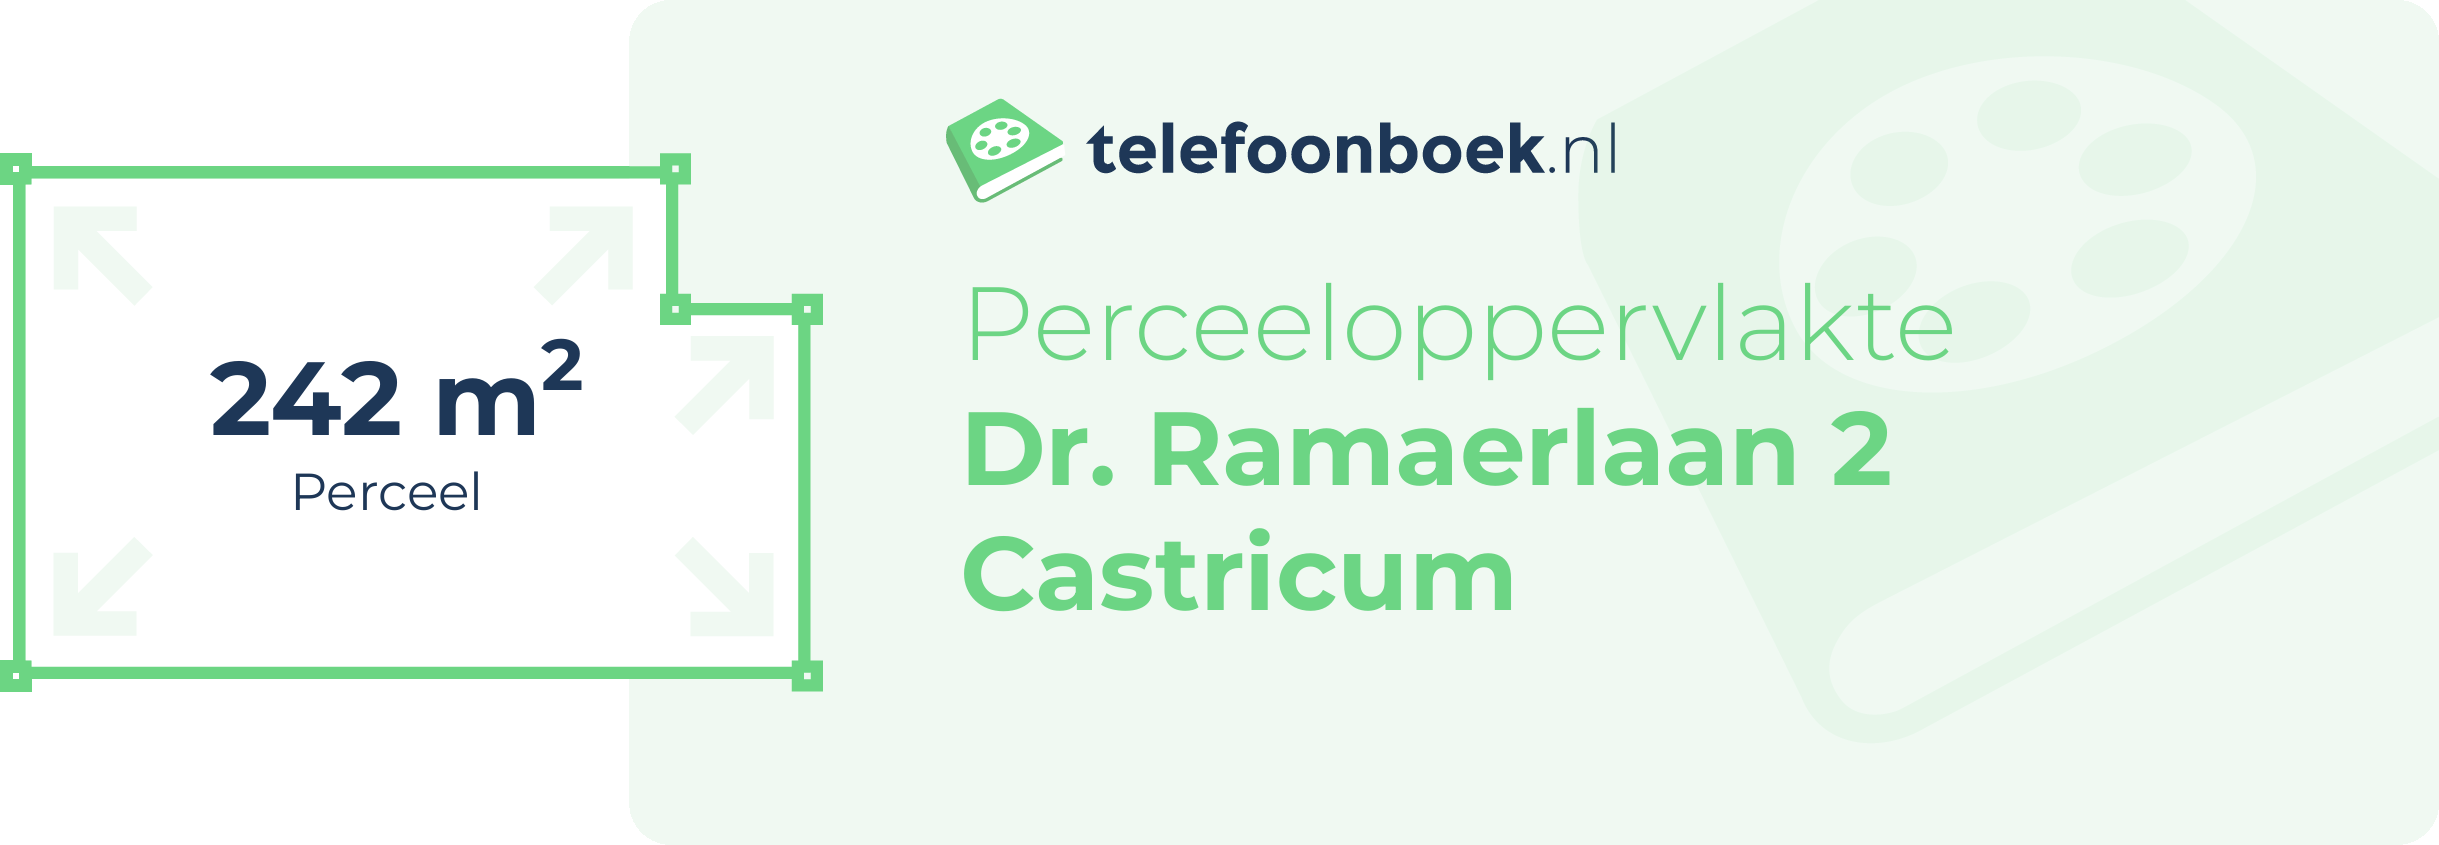 Perceeloppervlakte Dr. Ramaerlaan 2 Castricum